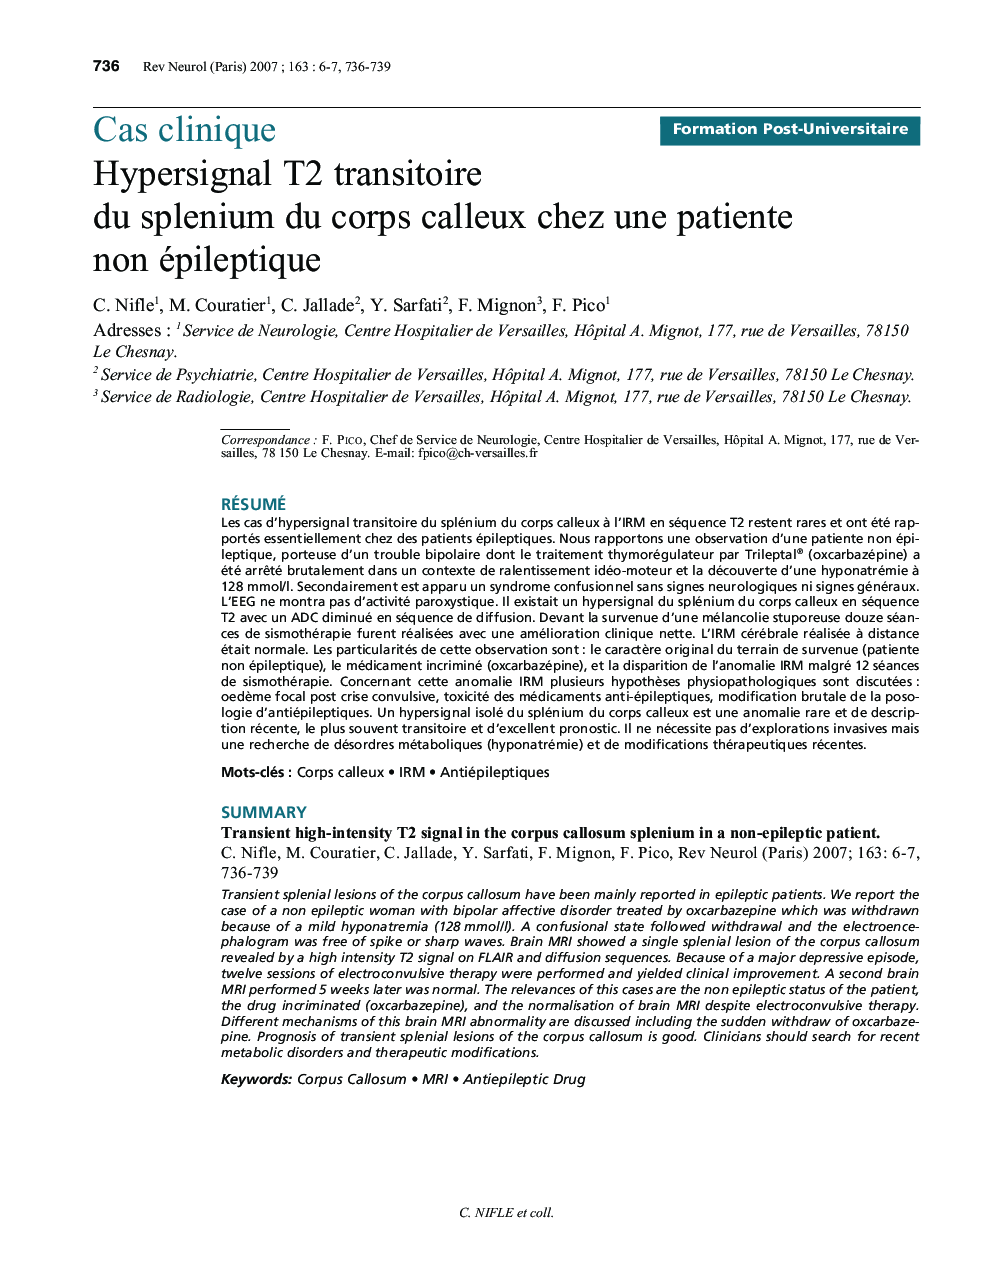 Hypersignal T2 transitoire du splenium du corps calleux chez une patiente non épileptique